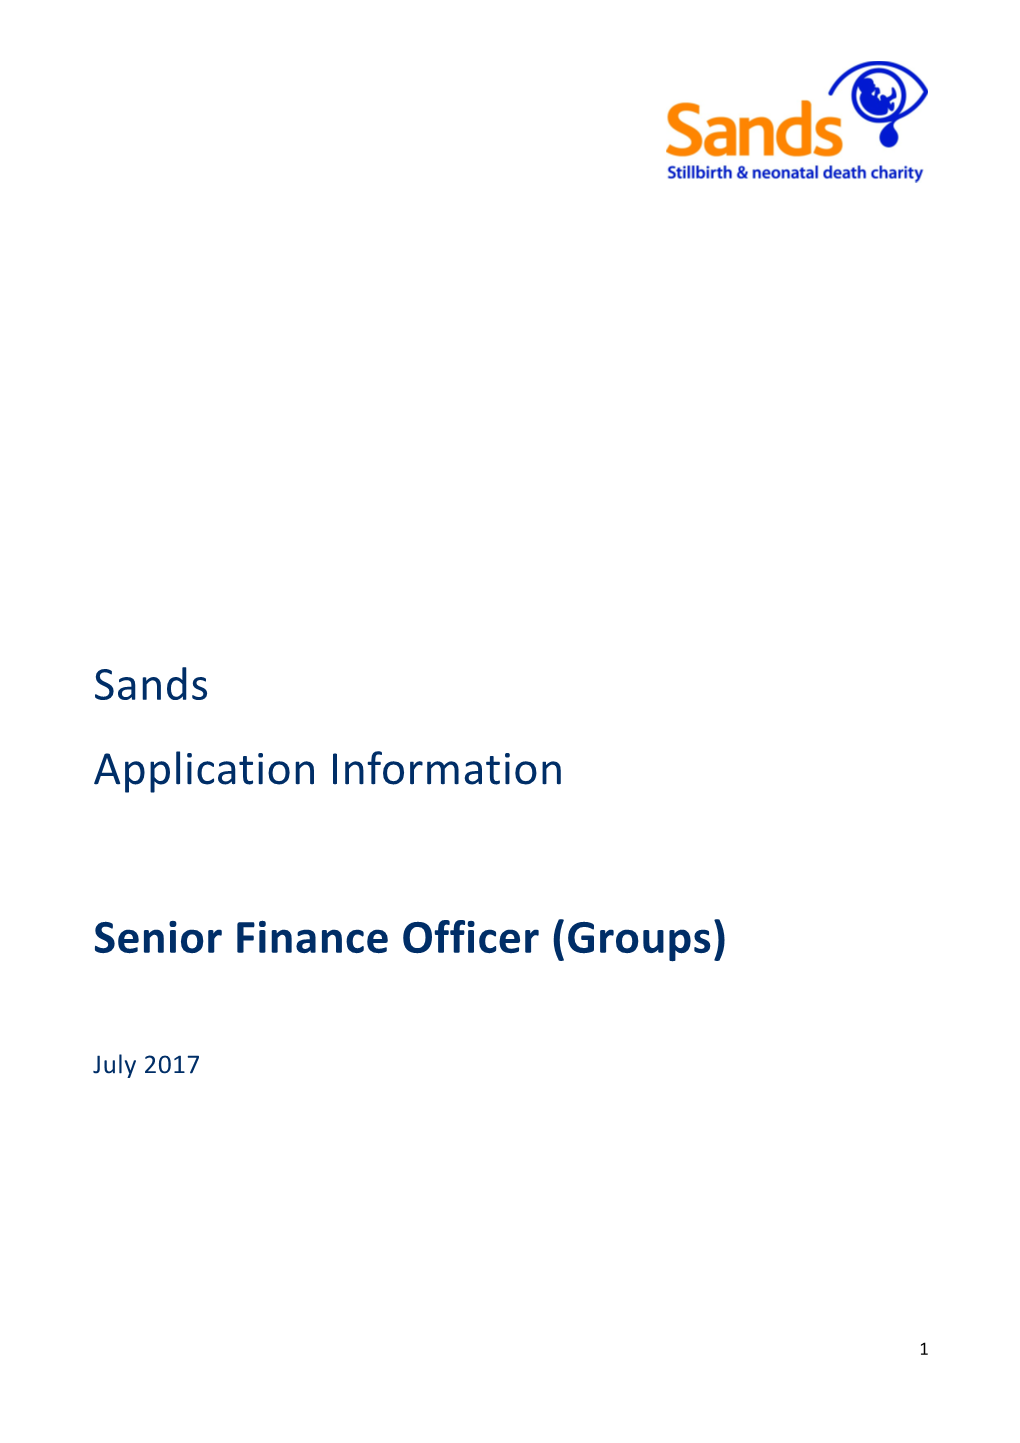 Senior Finance Officer (Groups)